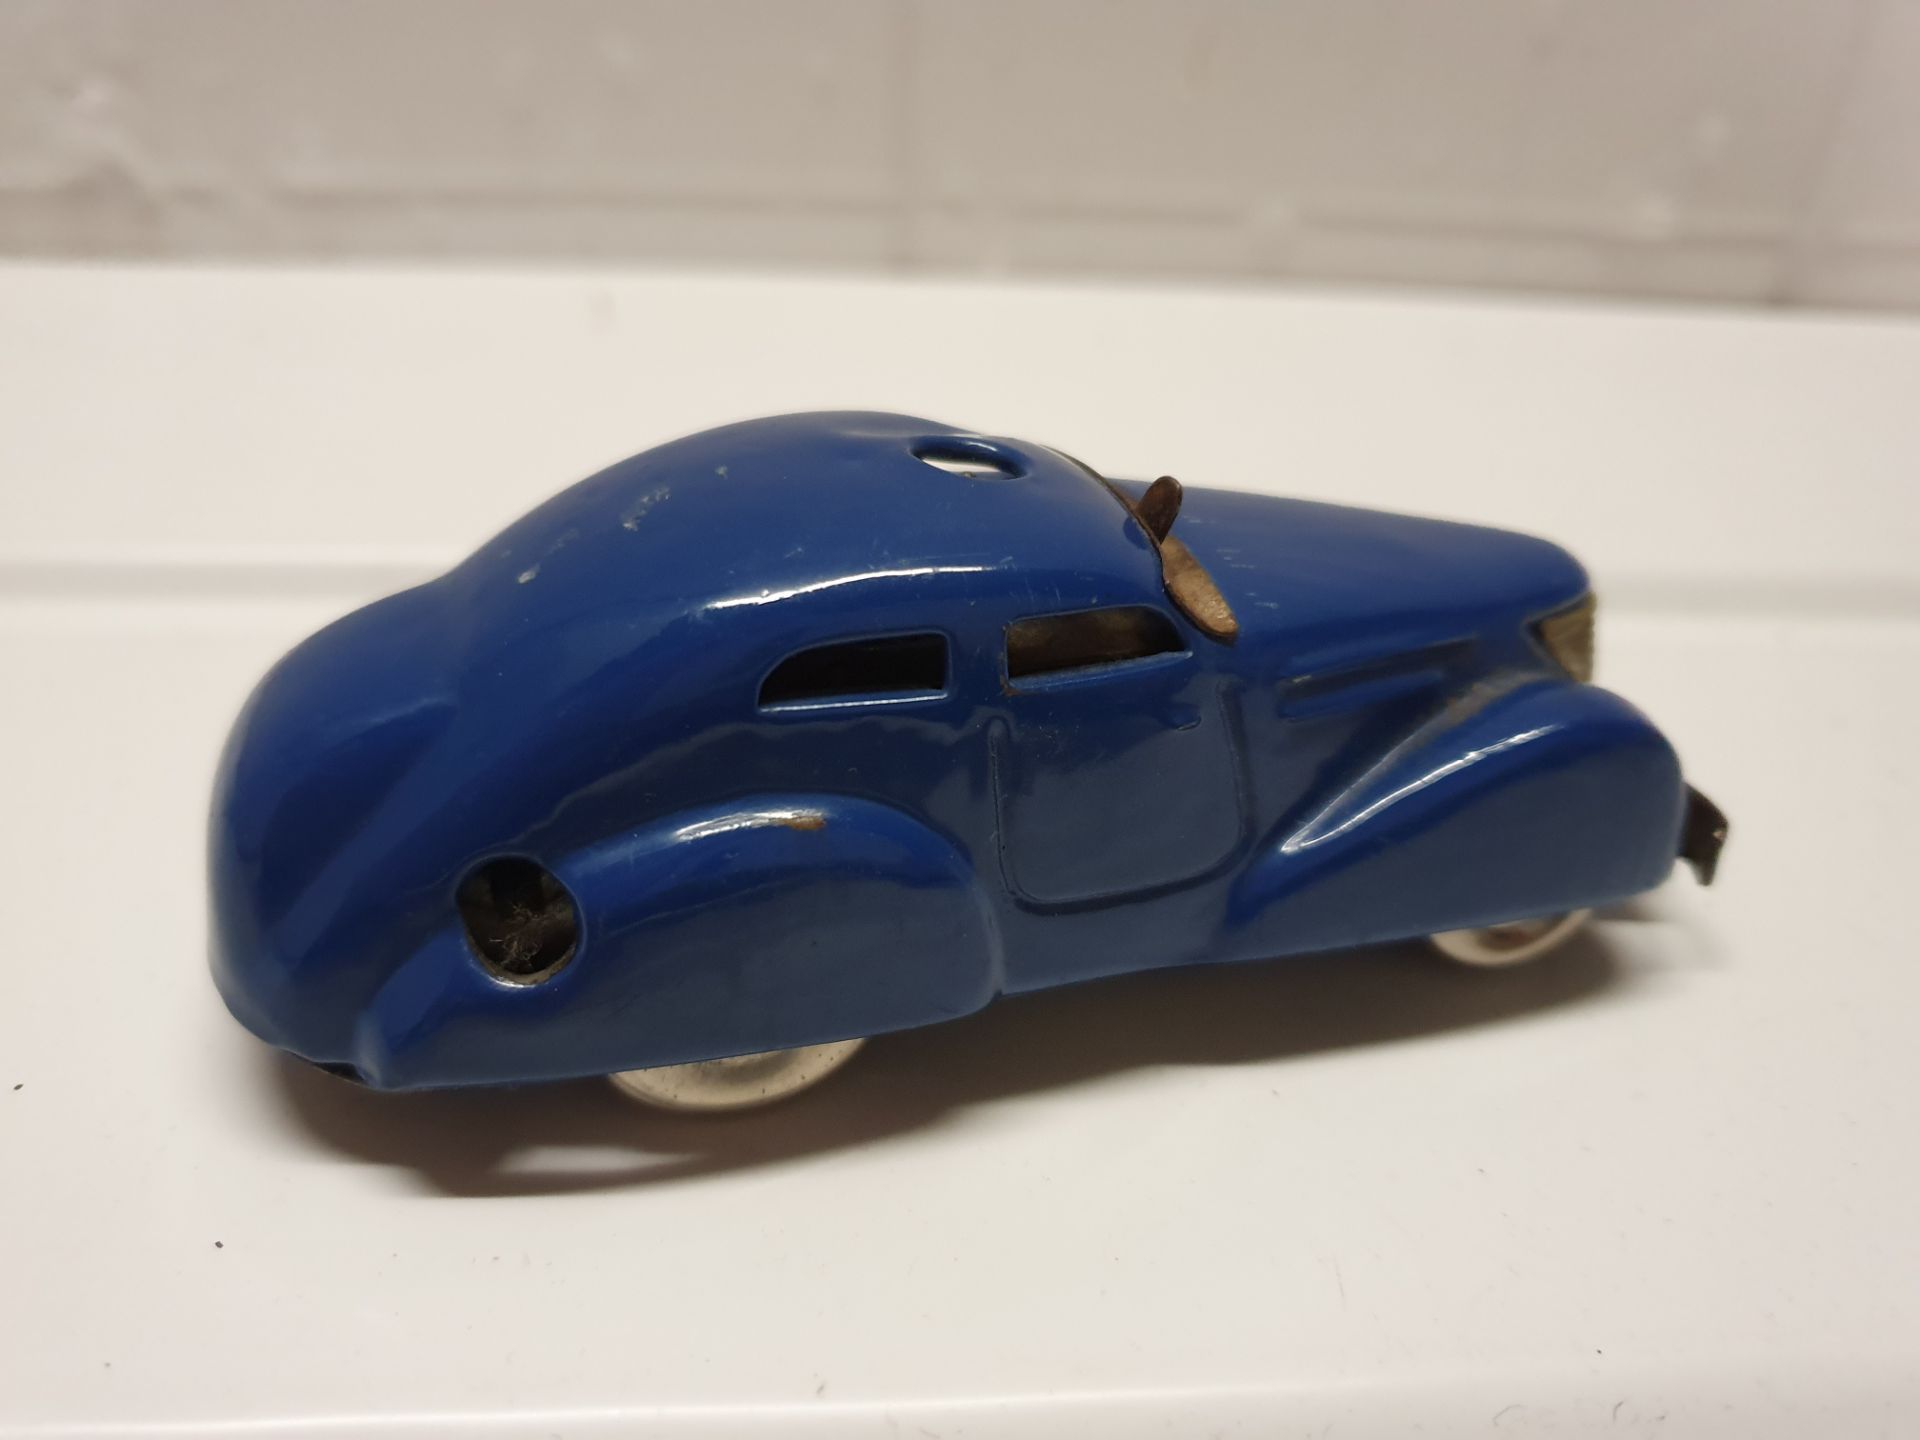 Vintage Schuco Toy Car - Image 3 of 5